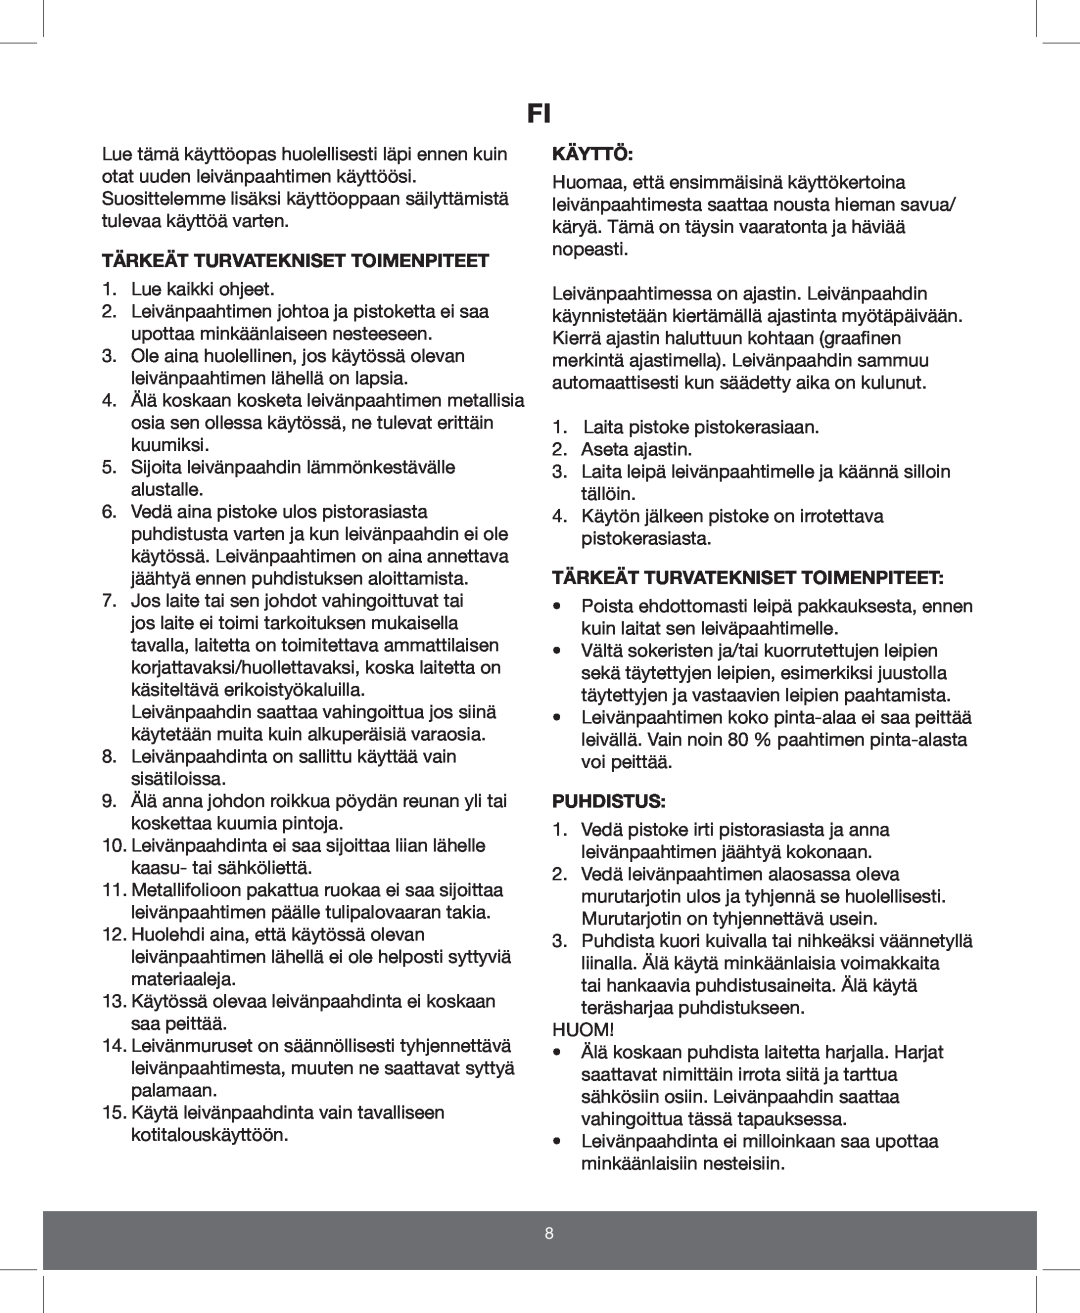 Melissa 643-110 manual Tärkeät Turvatekniset Toimenpiteet, Käyttö, Puhdistus 